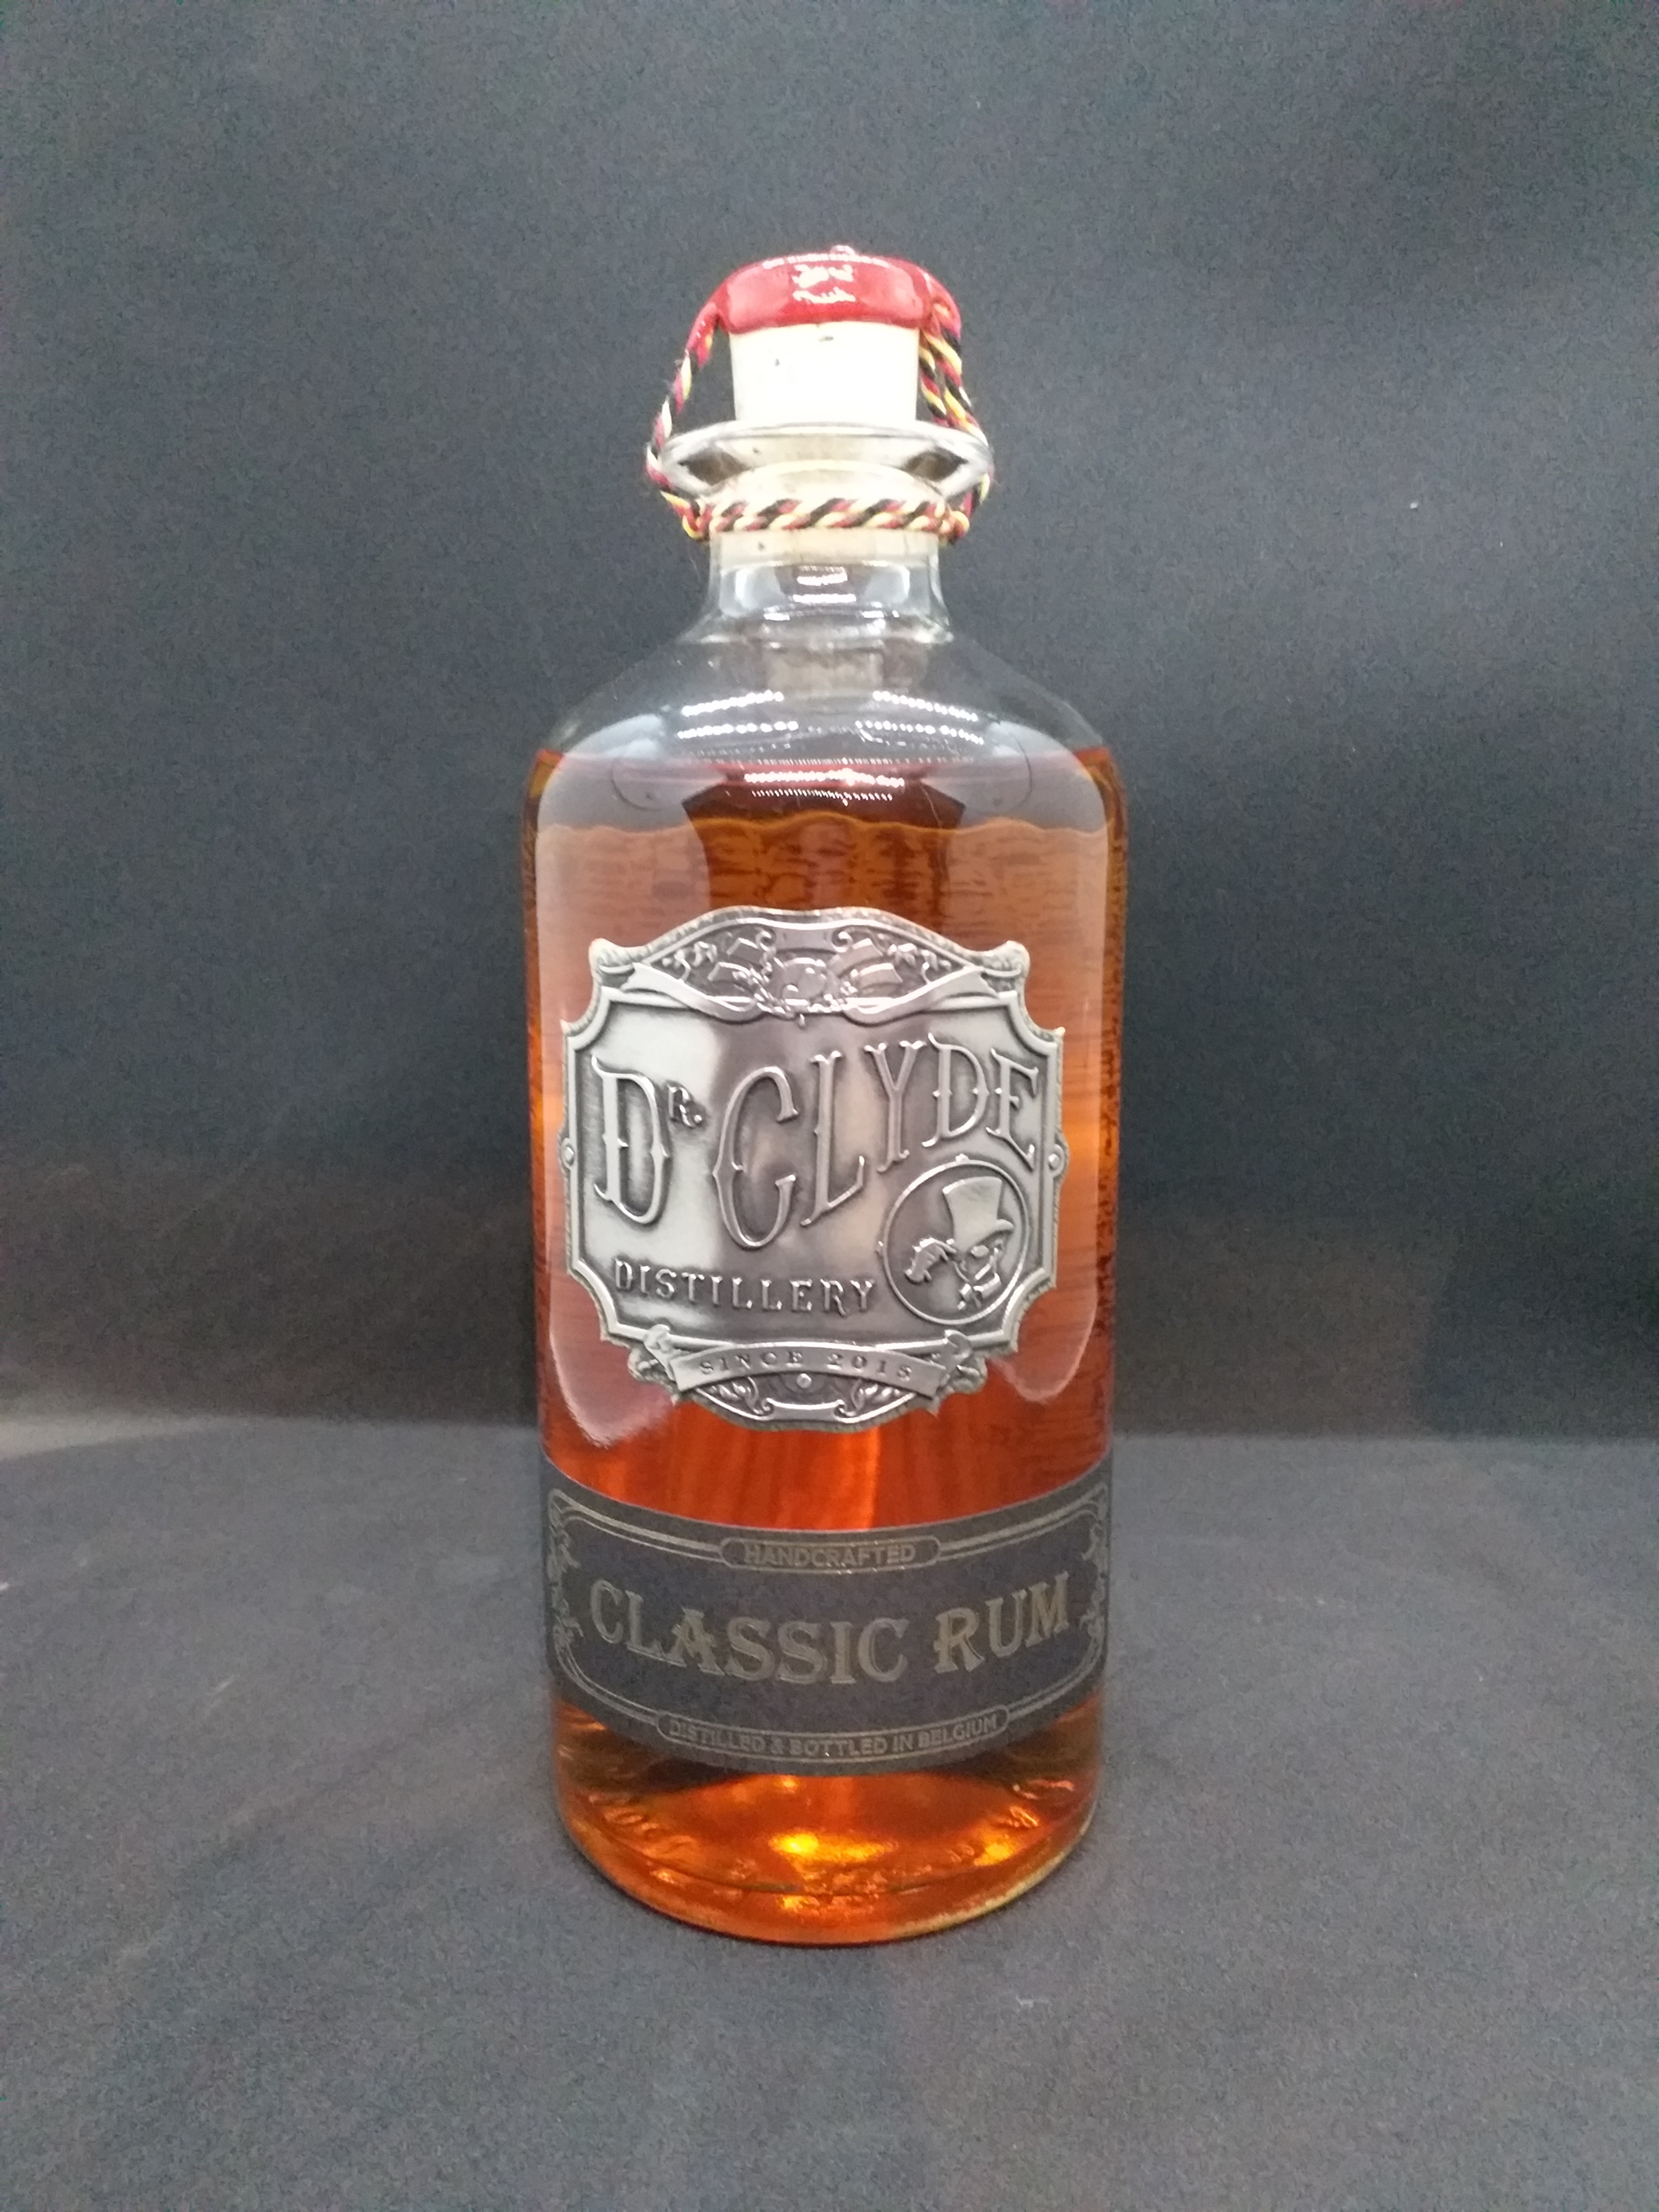 Le Classic Rum du Dr Clyde 